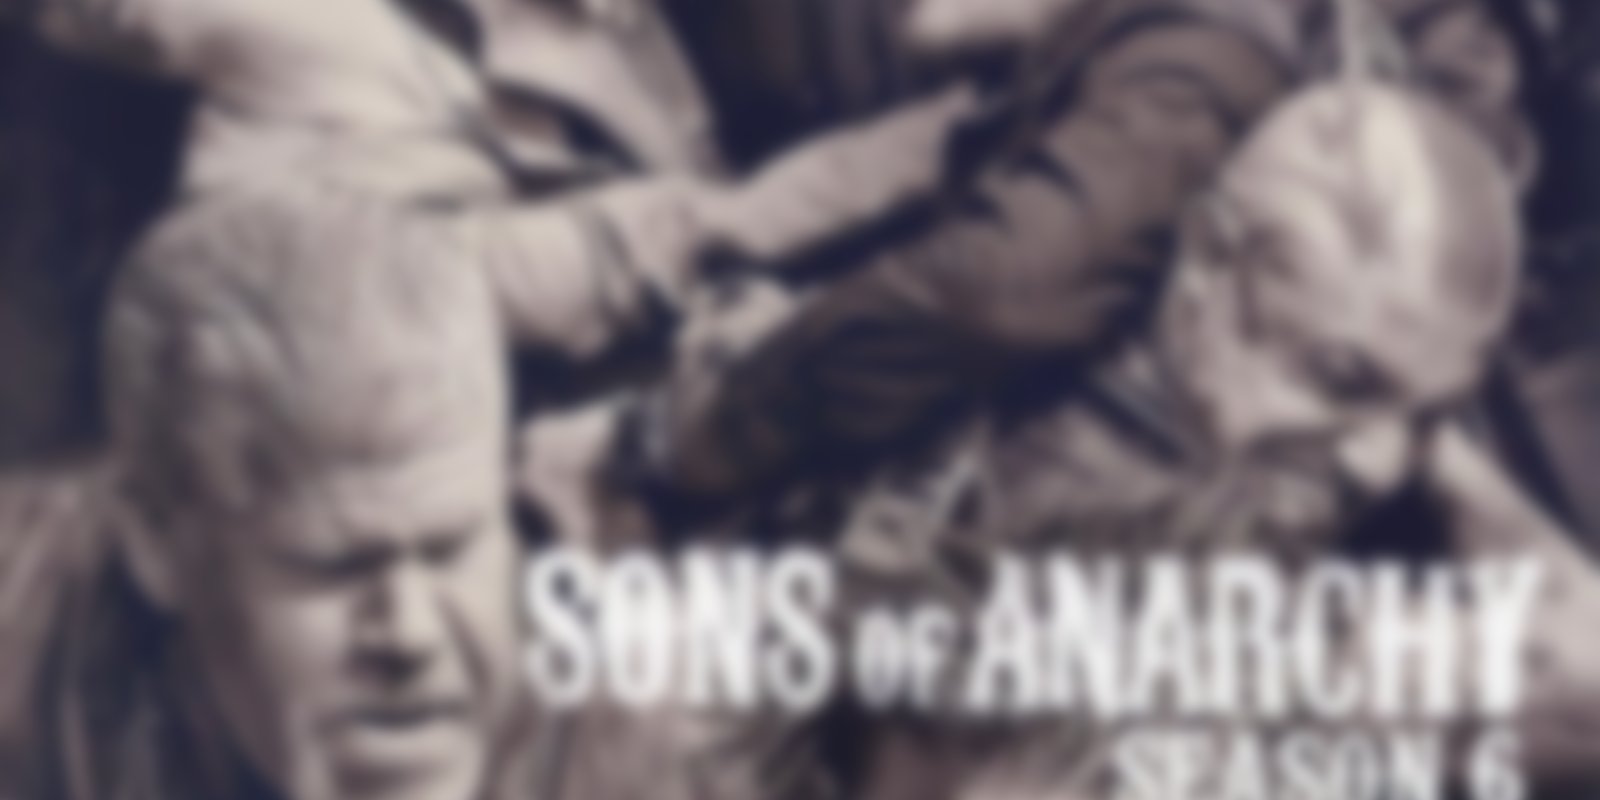 Sons of Anarchy - Staffel 6